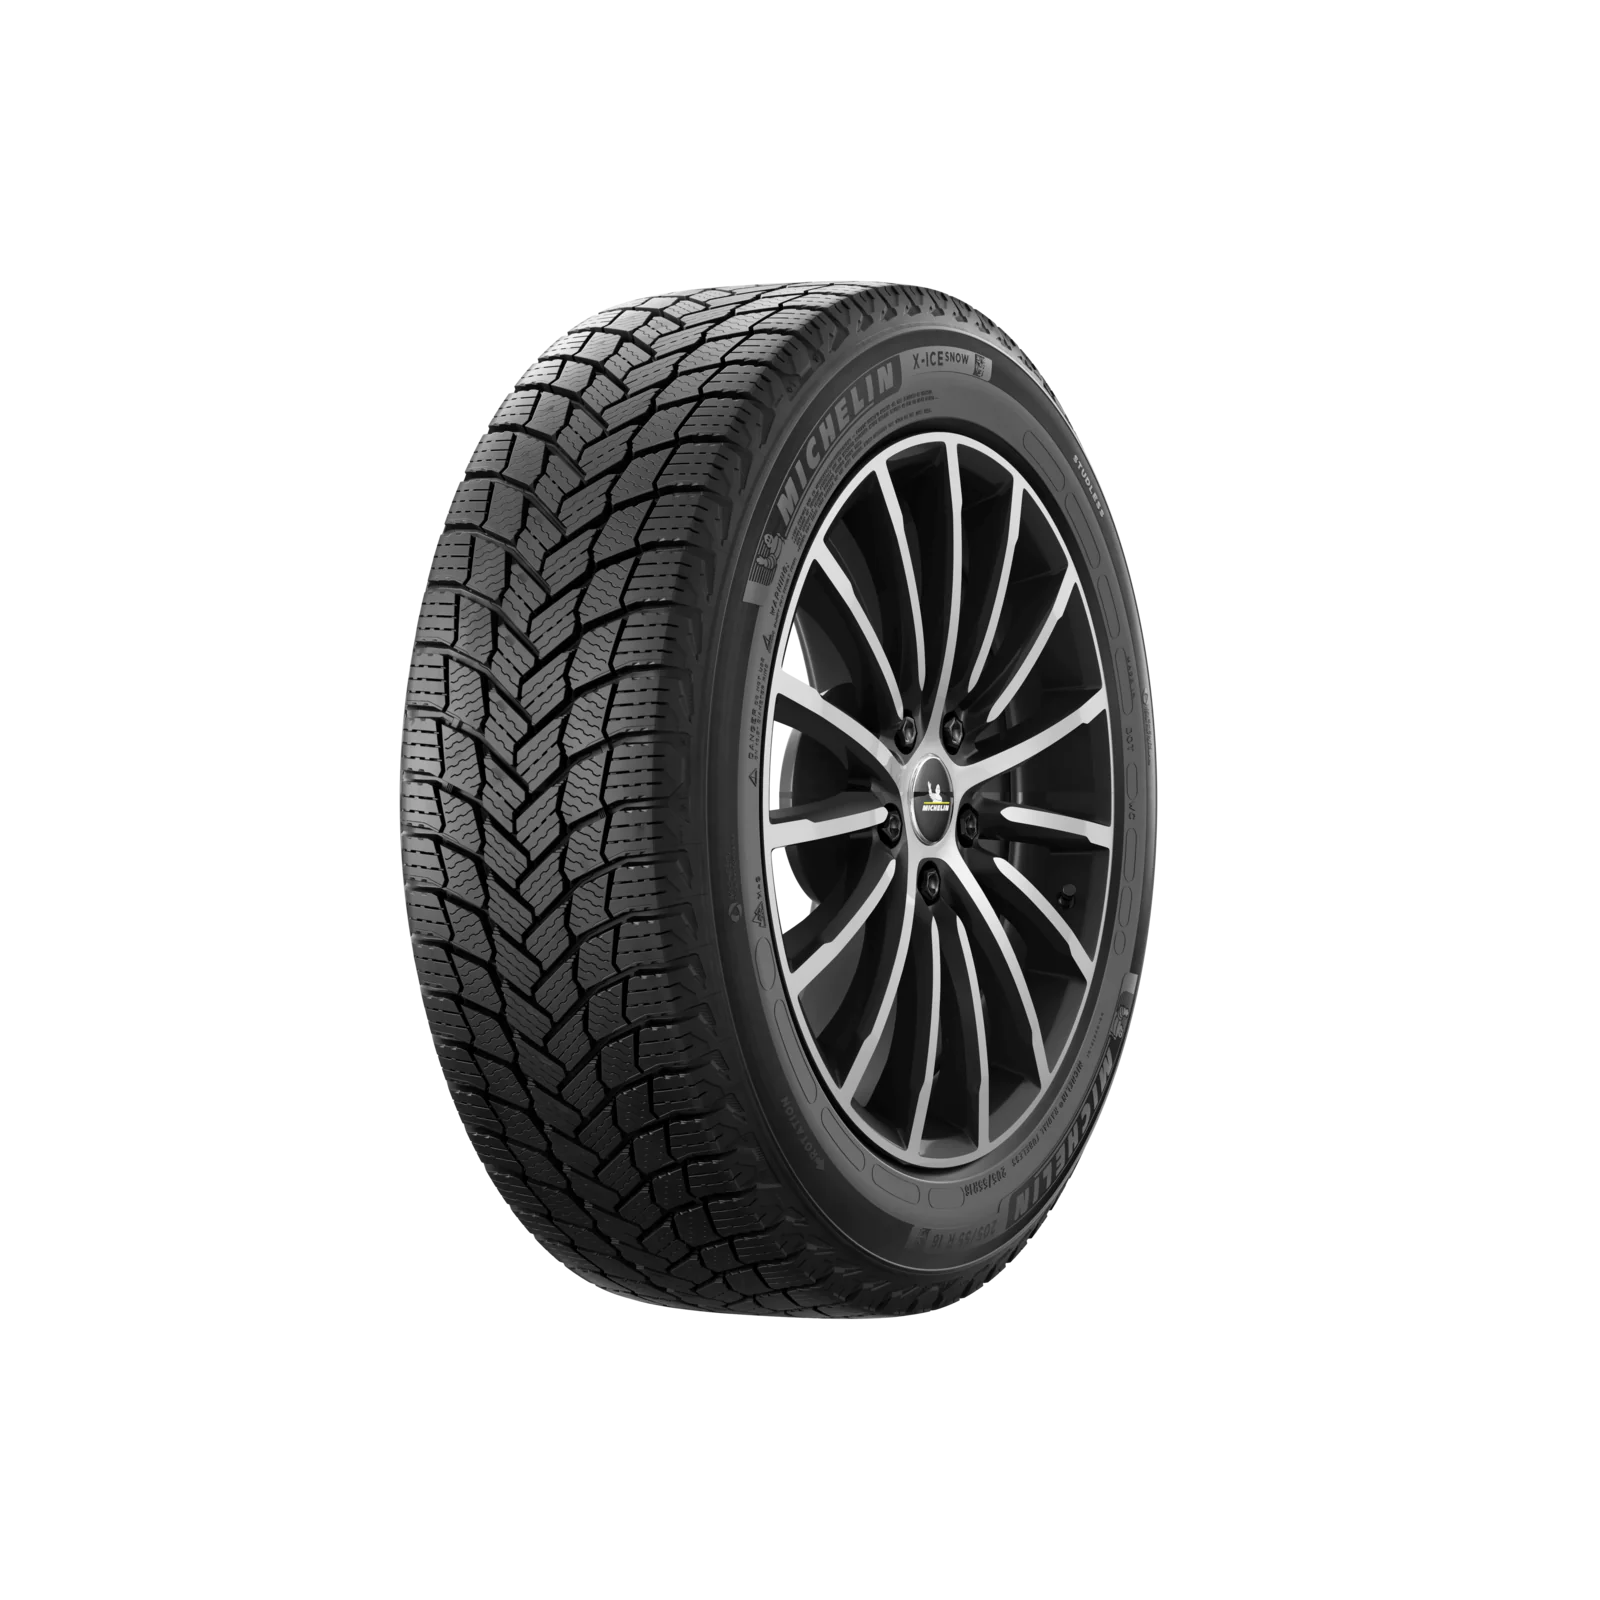 Michelin Michelin 215/70 R16 100T X-ICE SNOW SUV pneumatici nuovi Invernale 